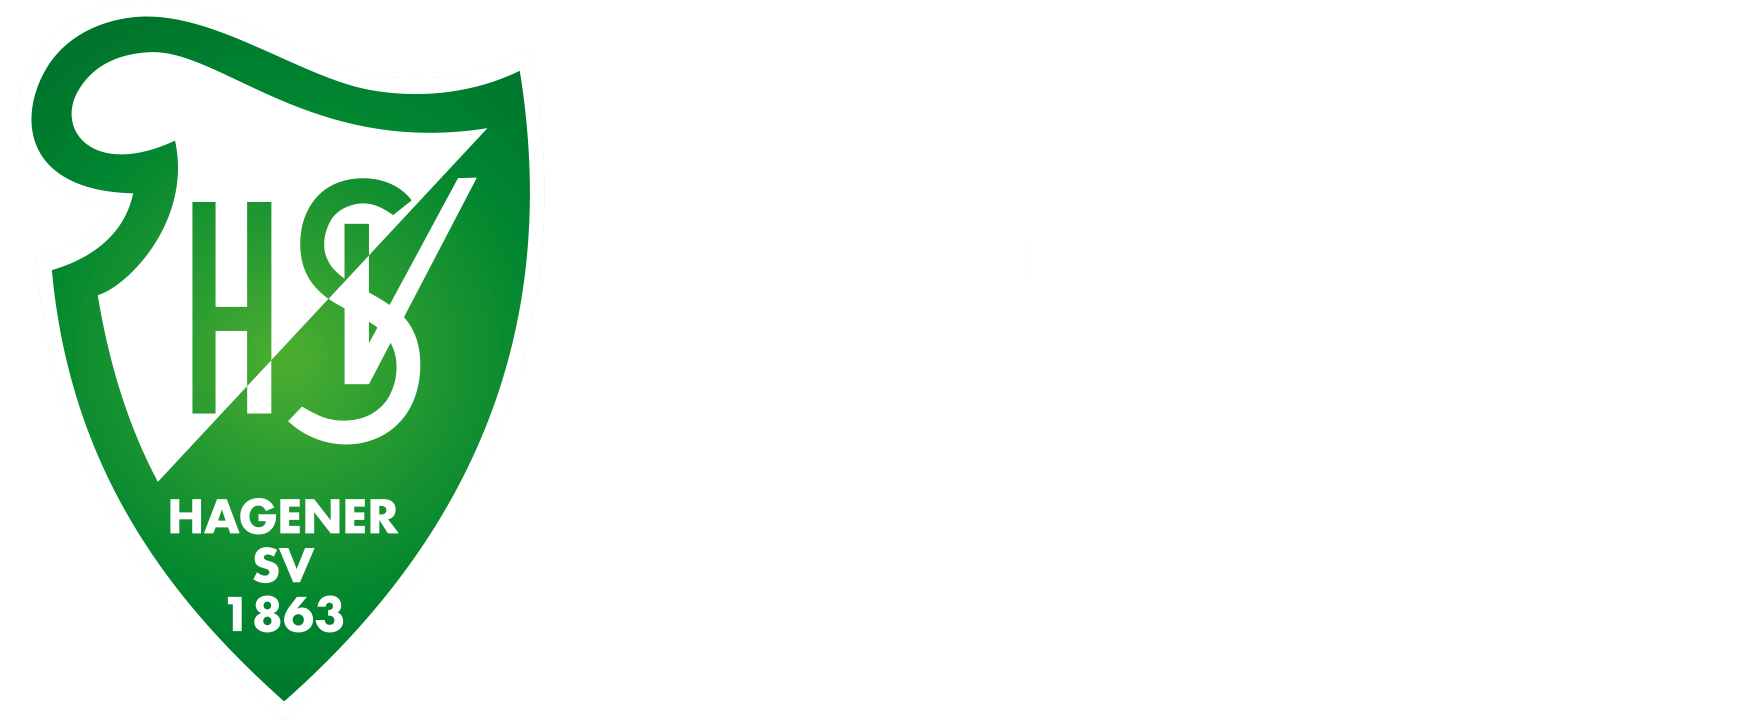 Hagener SV Handball